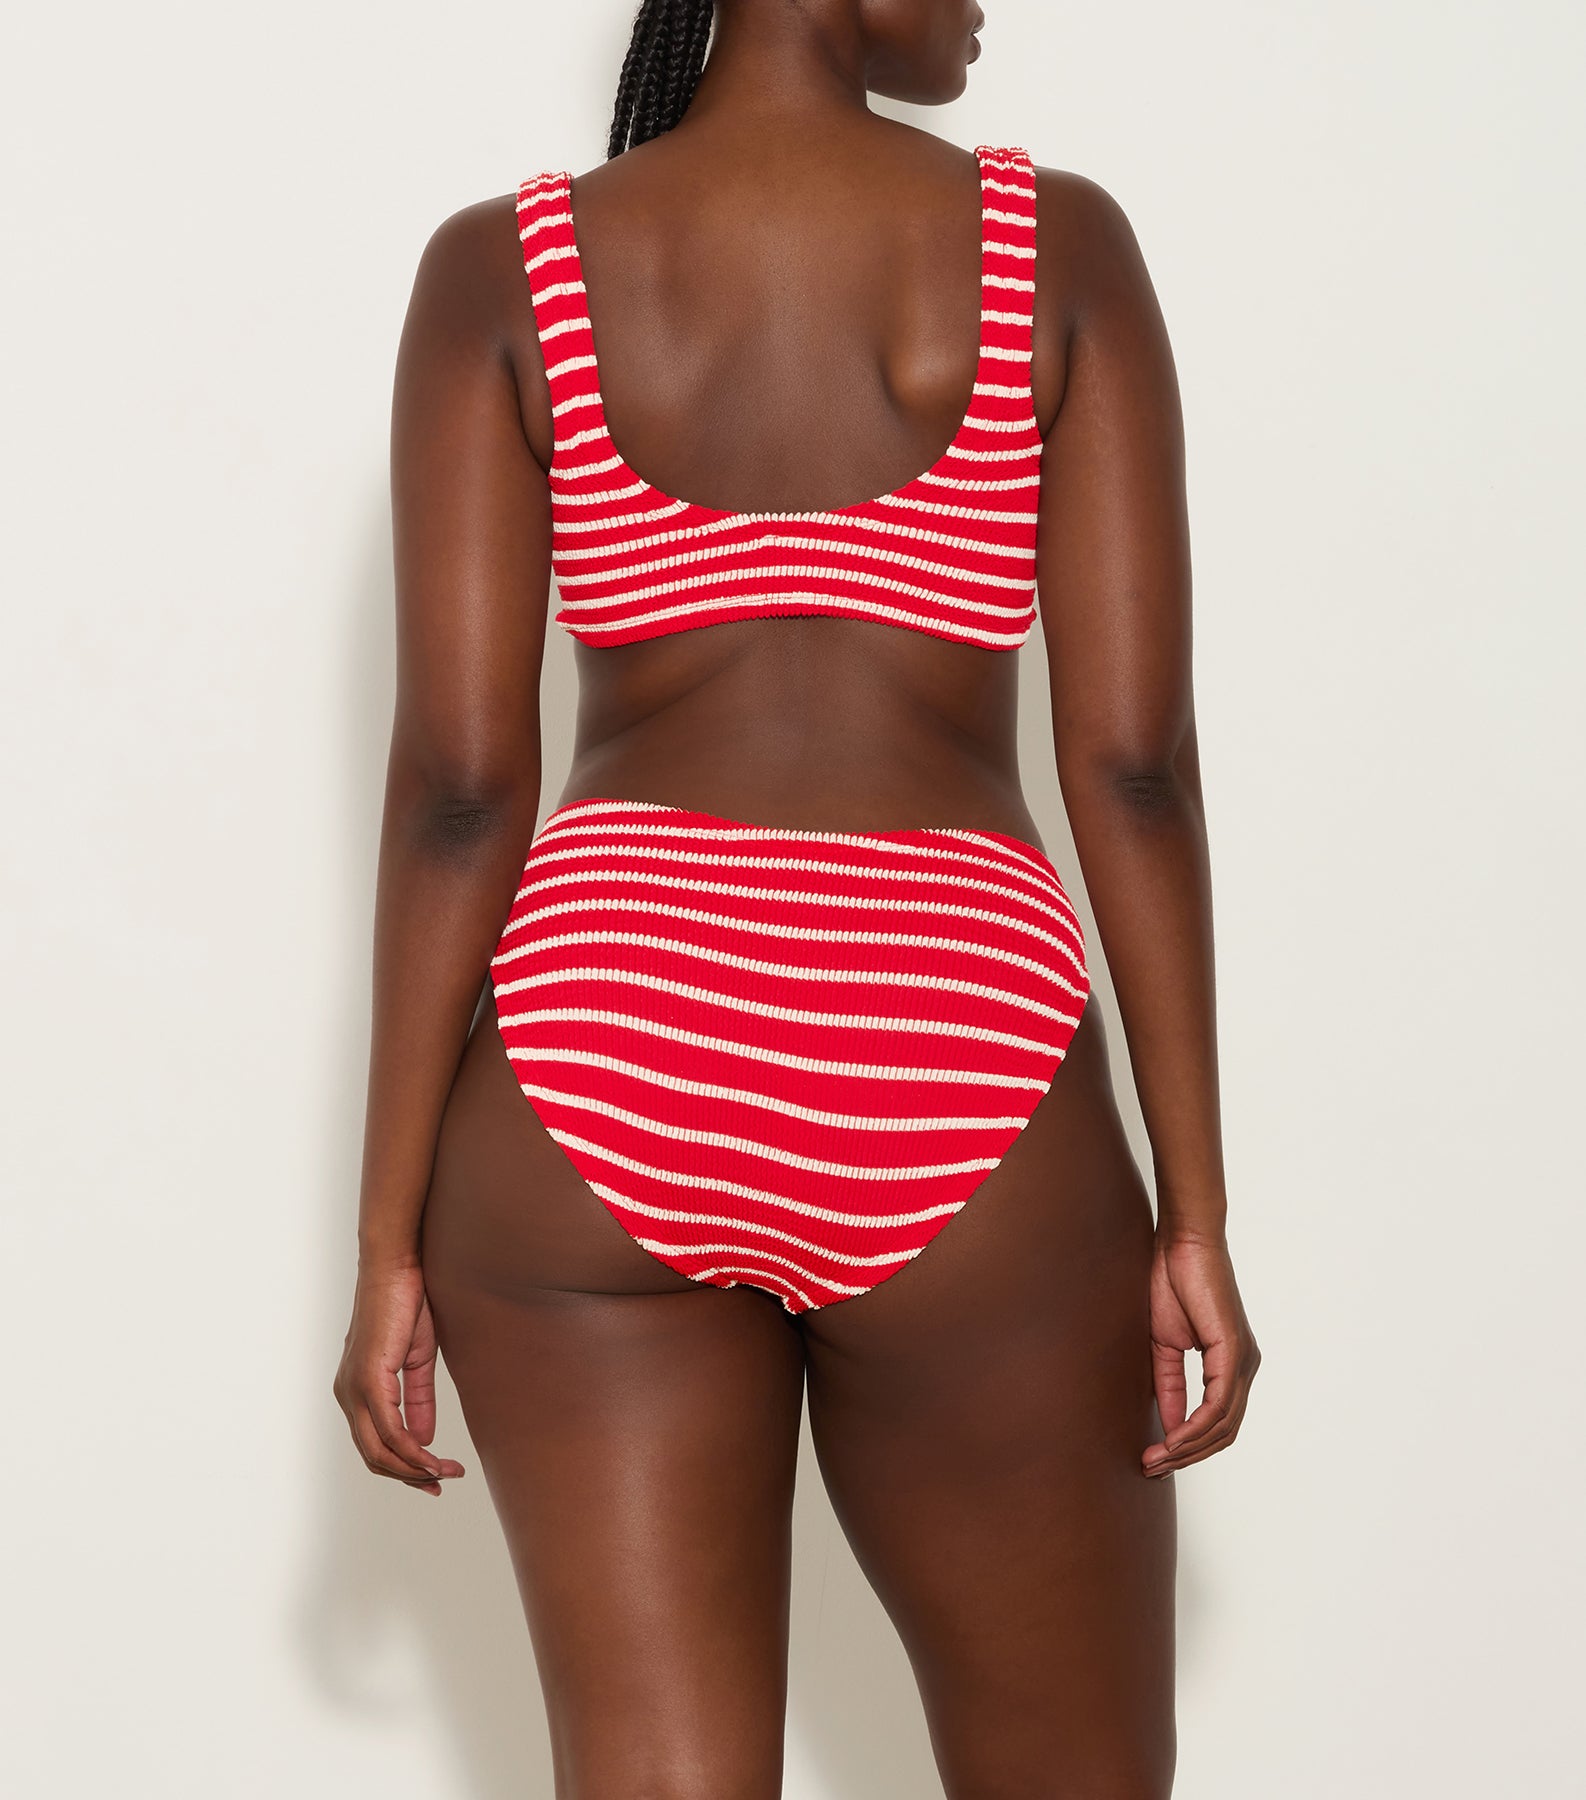 Bonnie Stripe Bikini - Red/White